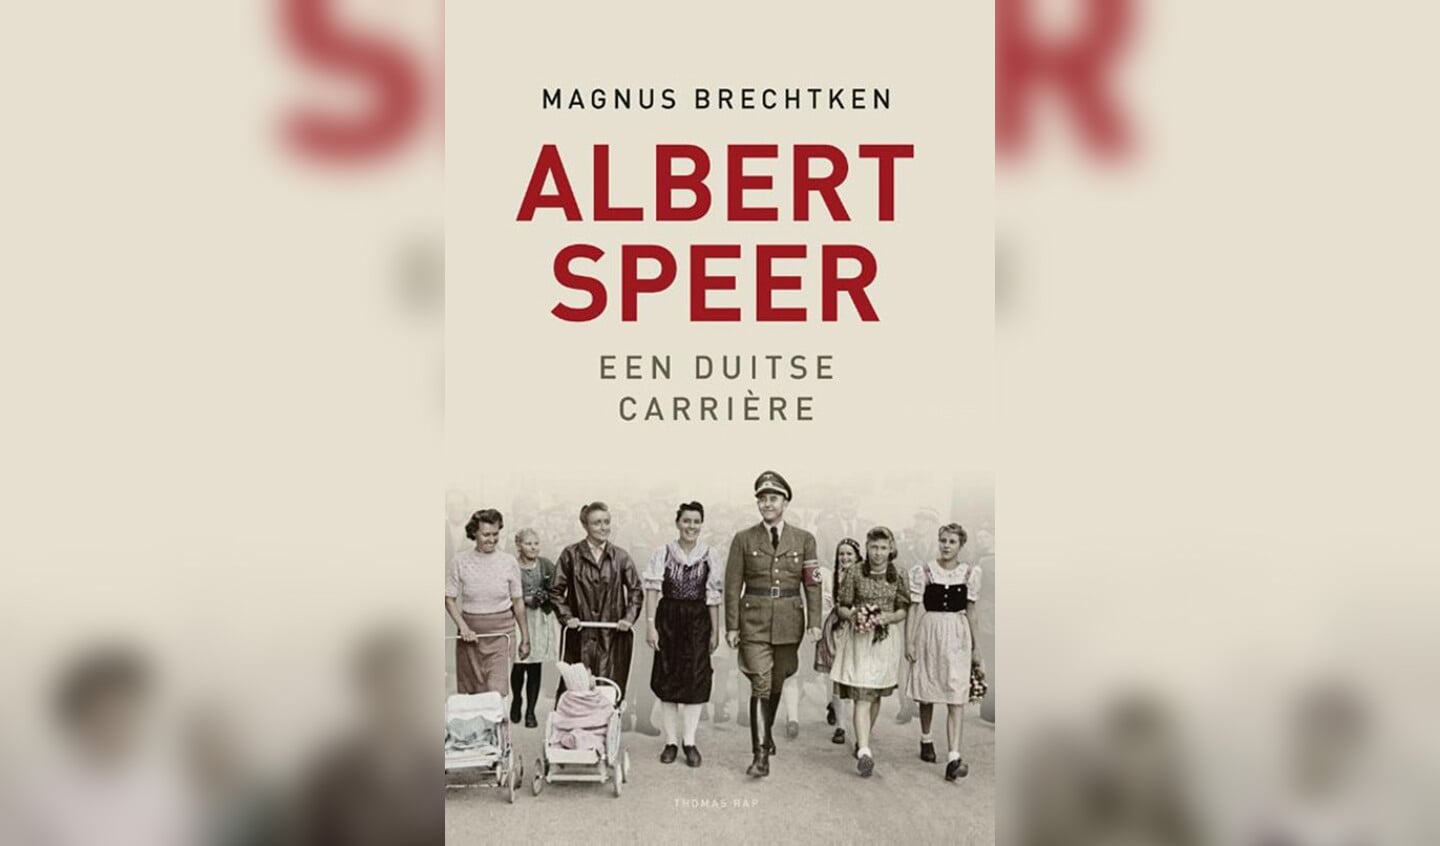 Albert Speer had doodstraf moeten krijgen